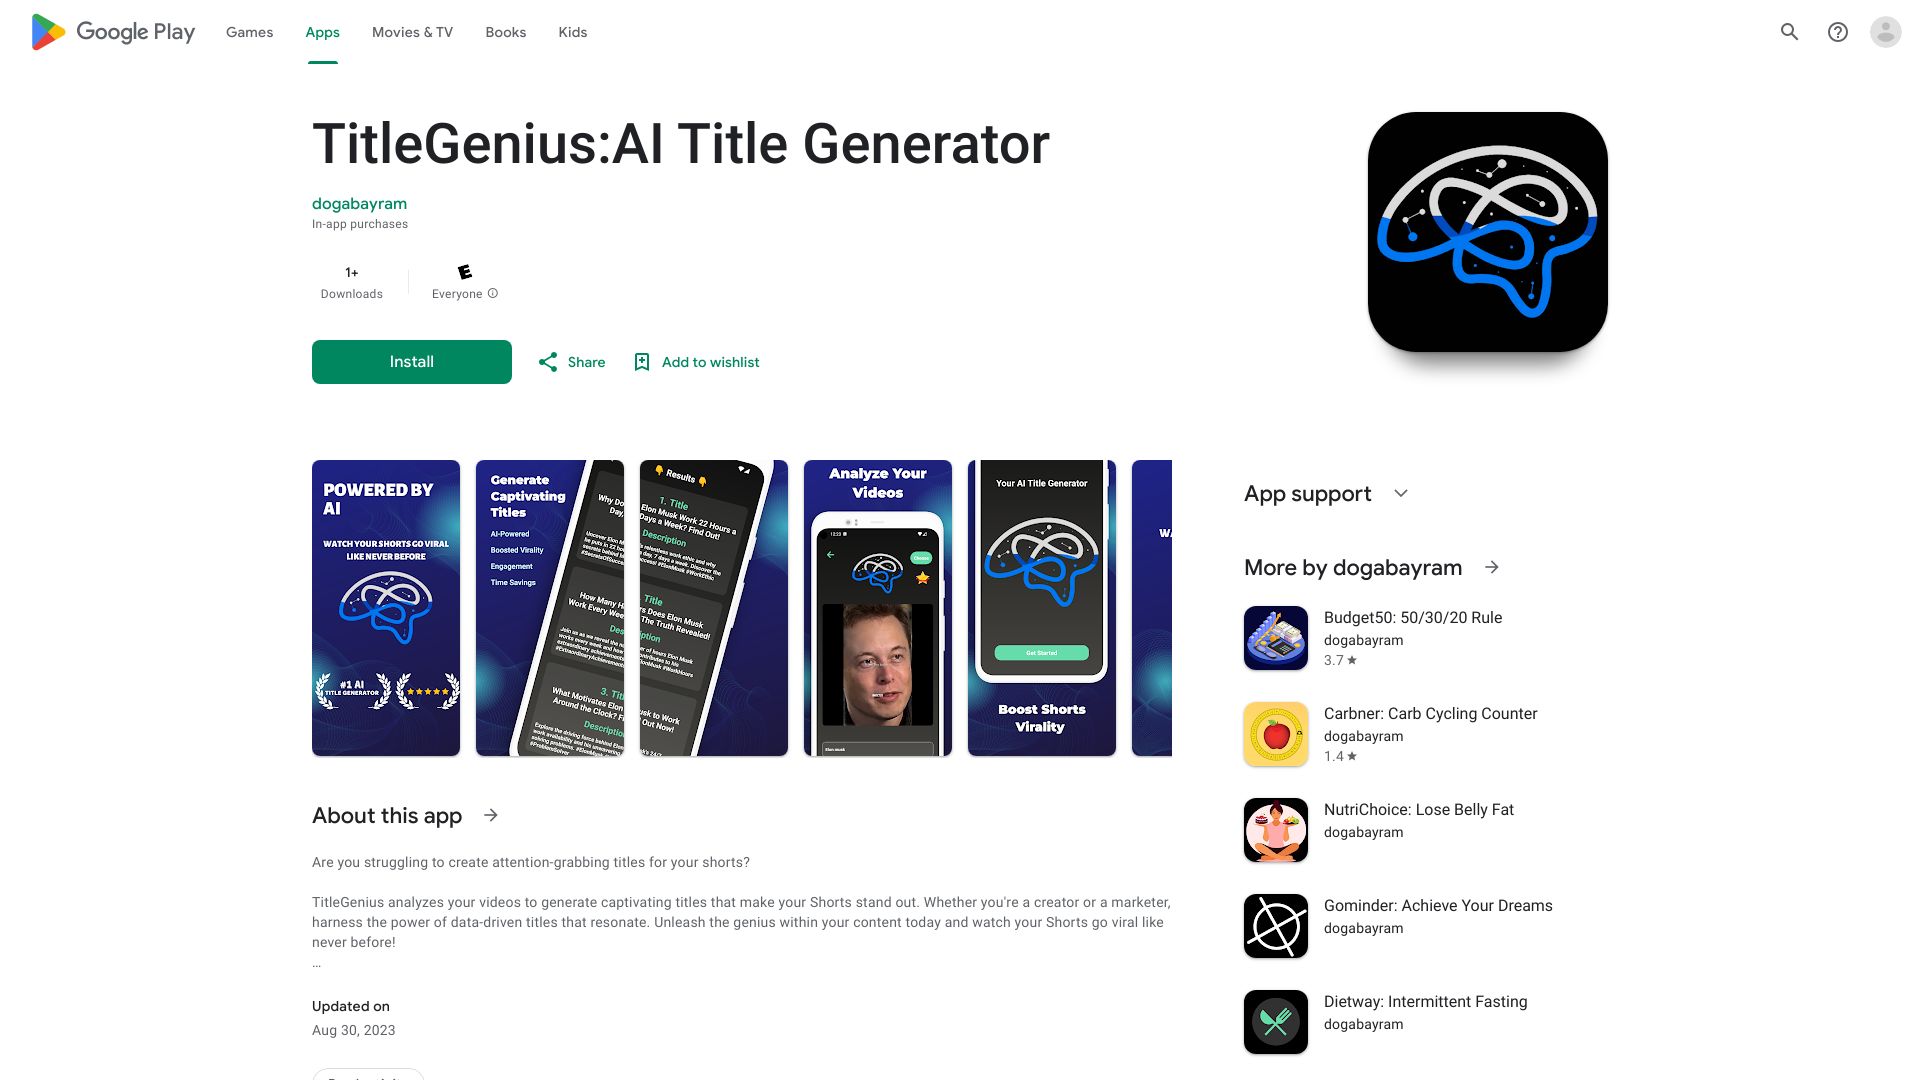 TitleGenius: AI Title Generator